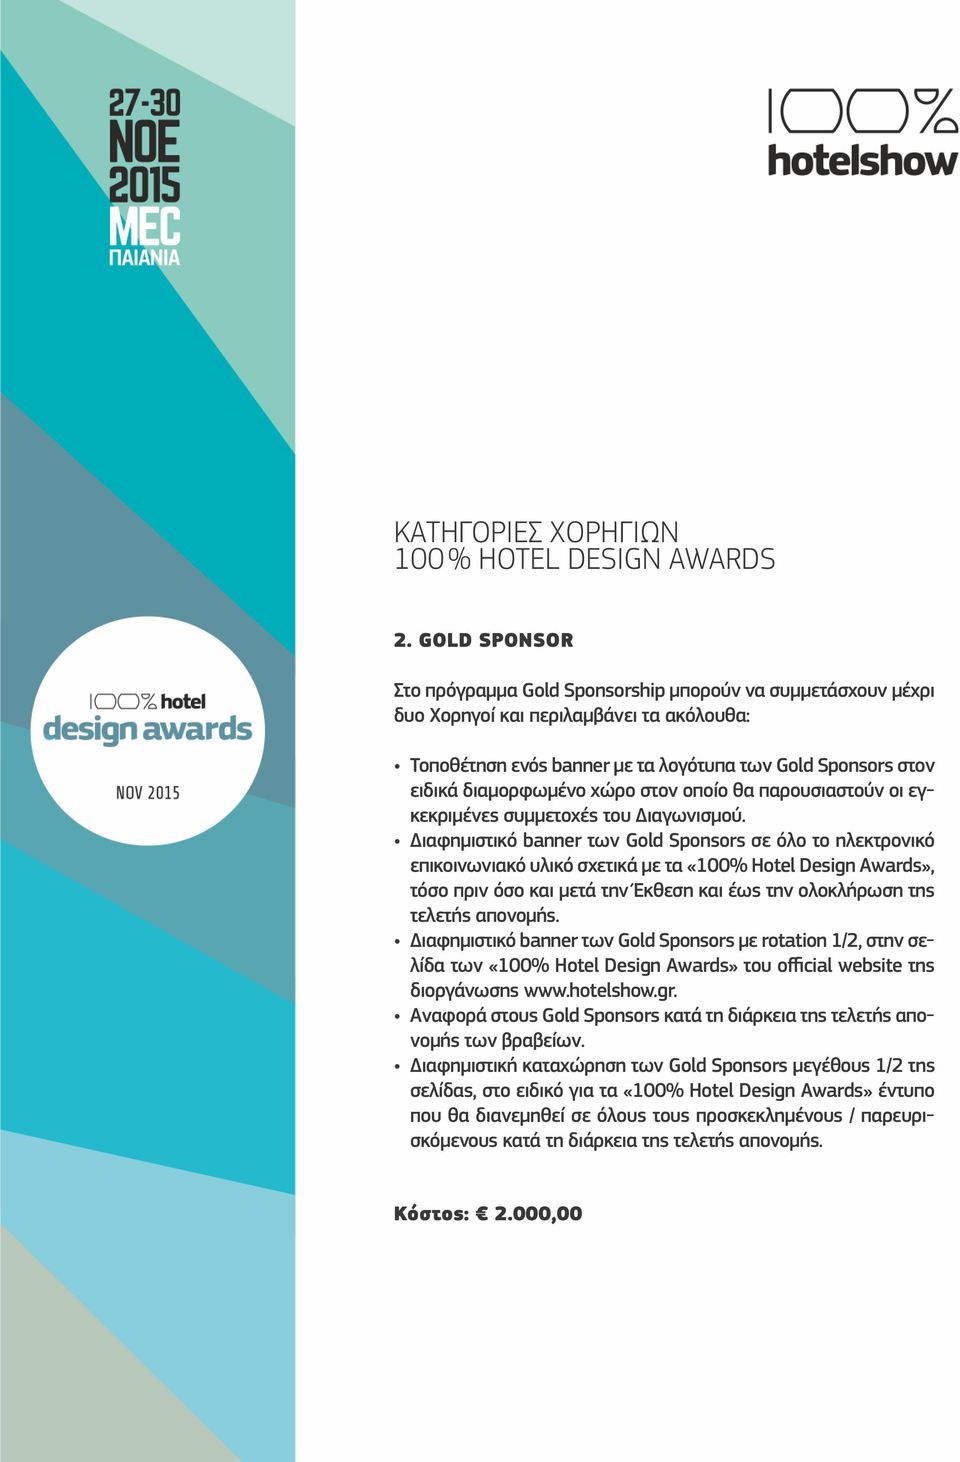 Έκθεση και έως την ολοκλήρωση της τελετής απονομής. Διαφημιστικό banner των Gold Sponsors με rotation 1/2, στην σελίδα των «100% Hotel Design Awards» του official website της διοργάνωσης www.